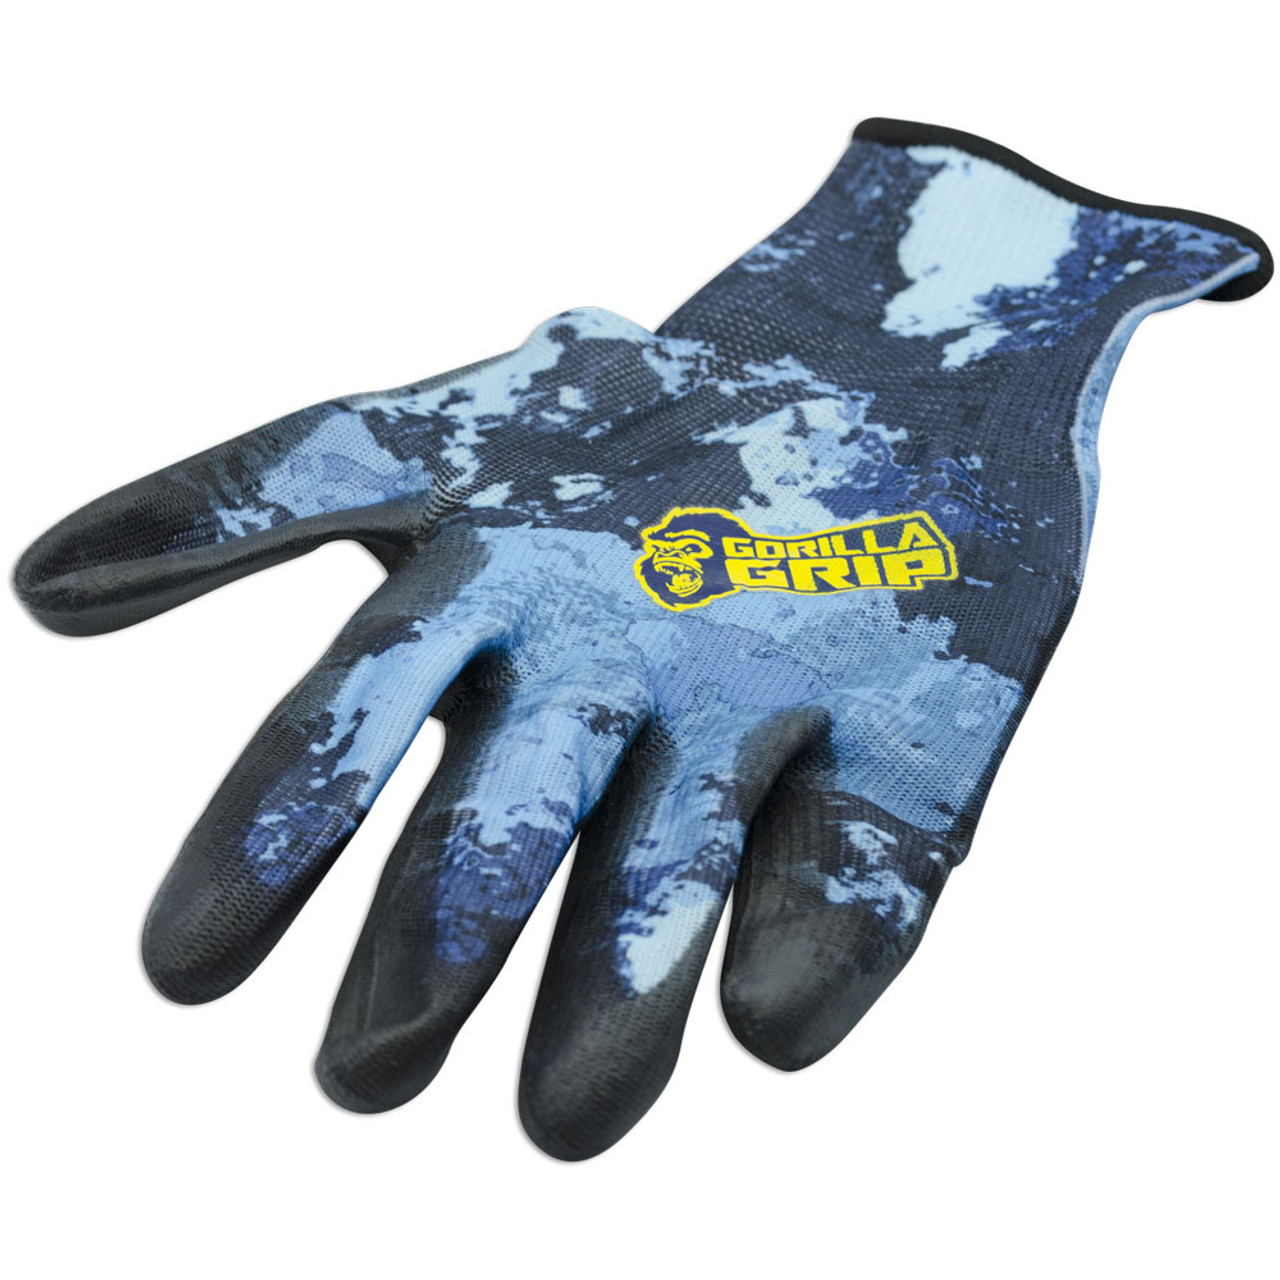 Gorilla grip gloves